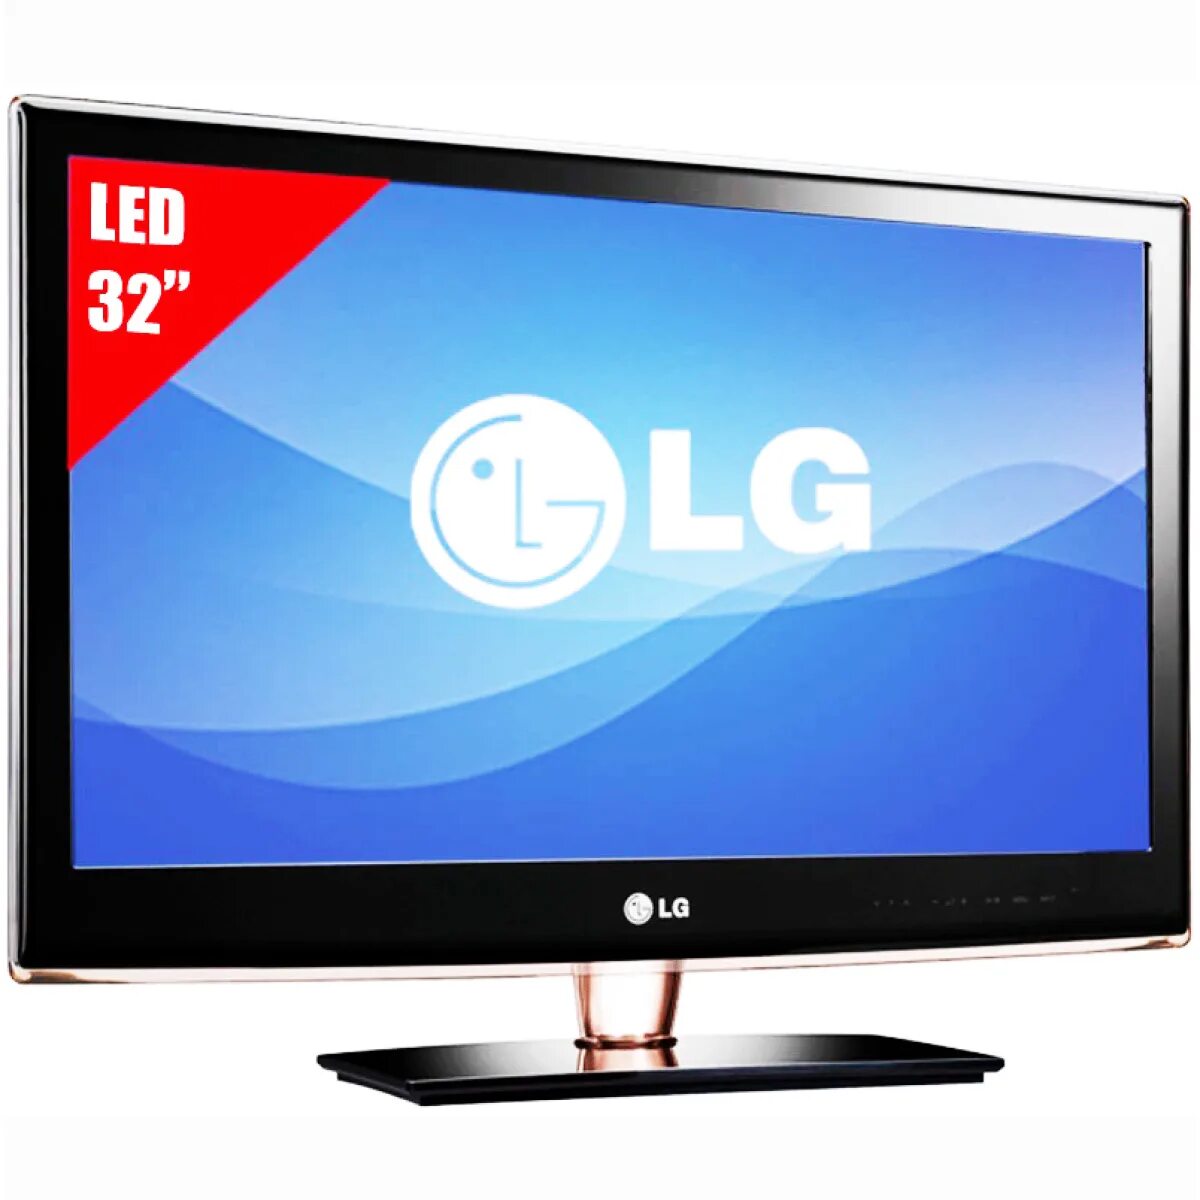 Lg купить в туле. LG led TV 32. LG led LCD 3d TV 32lb2. LG 32 led Television. ДНС телевизоры 32 дюйма Лджи.